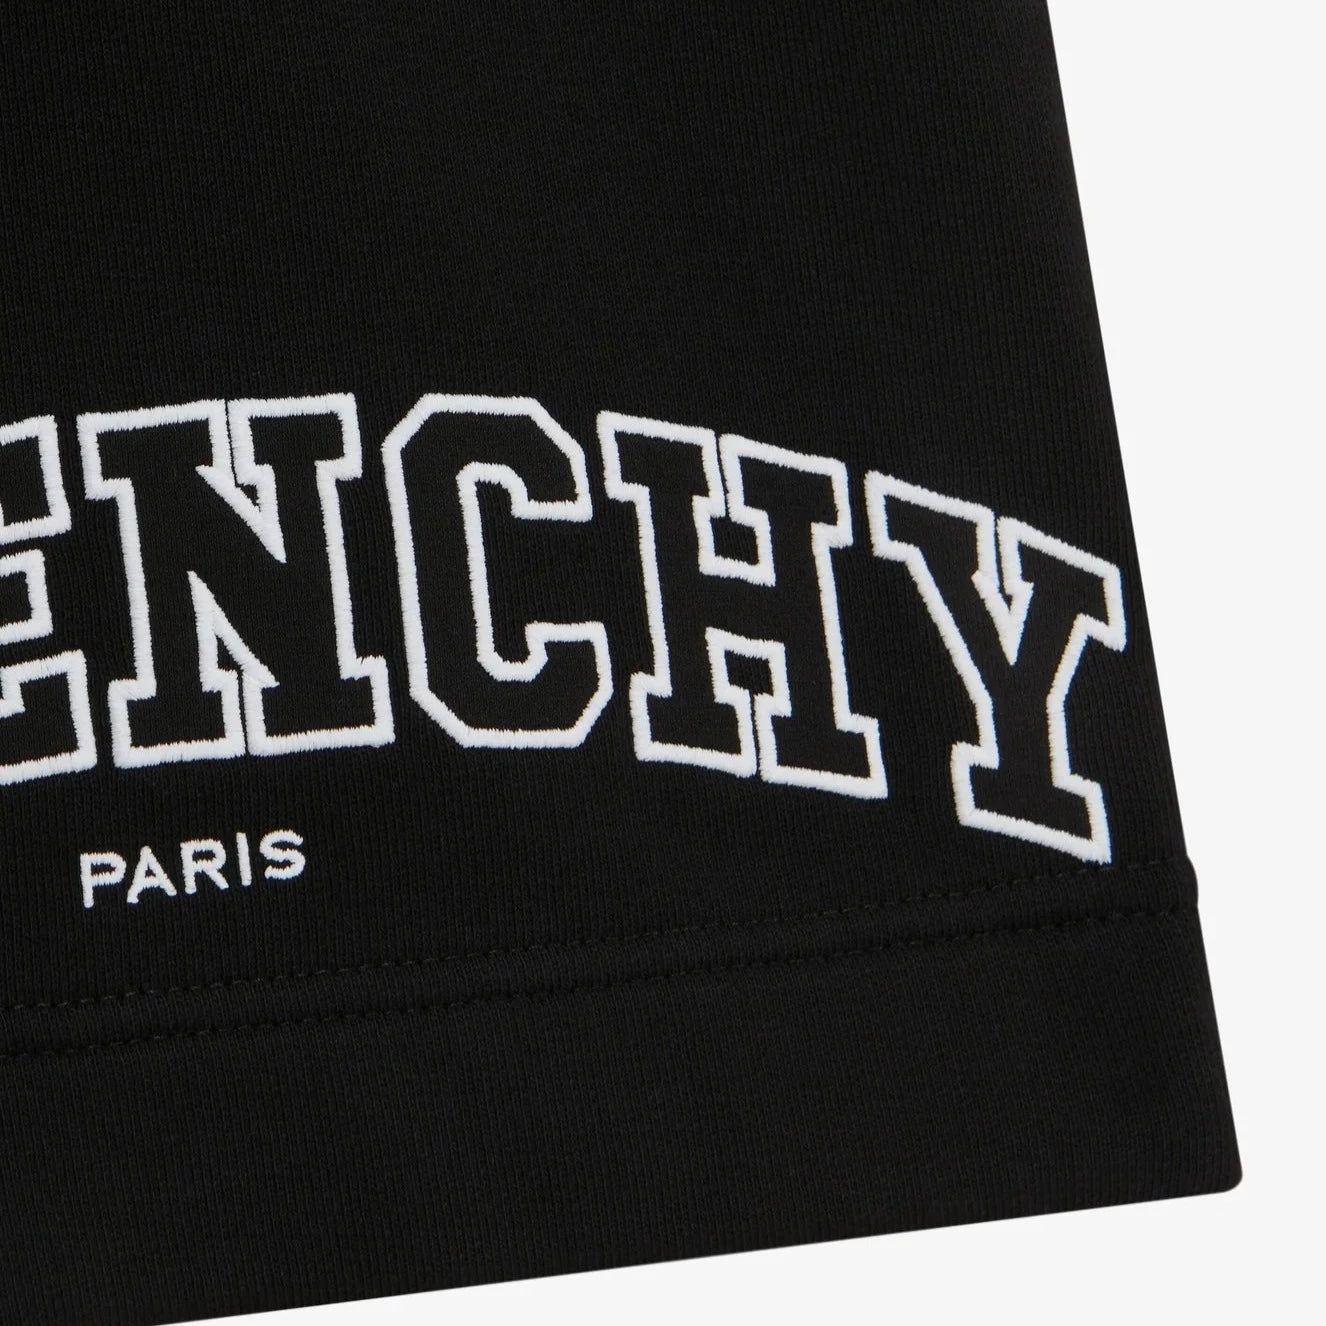 Givenchy Black Embroidered Logo Sweatshorts - DANYOUNGUK